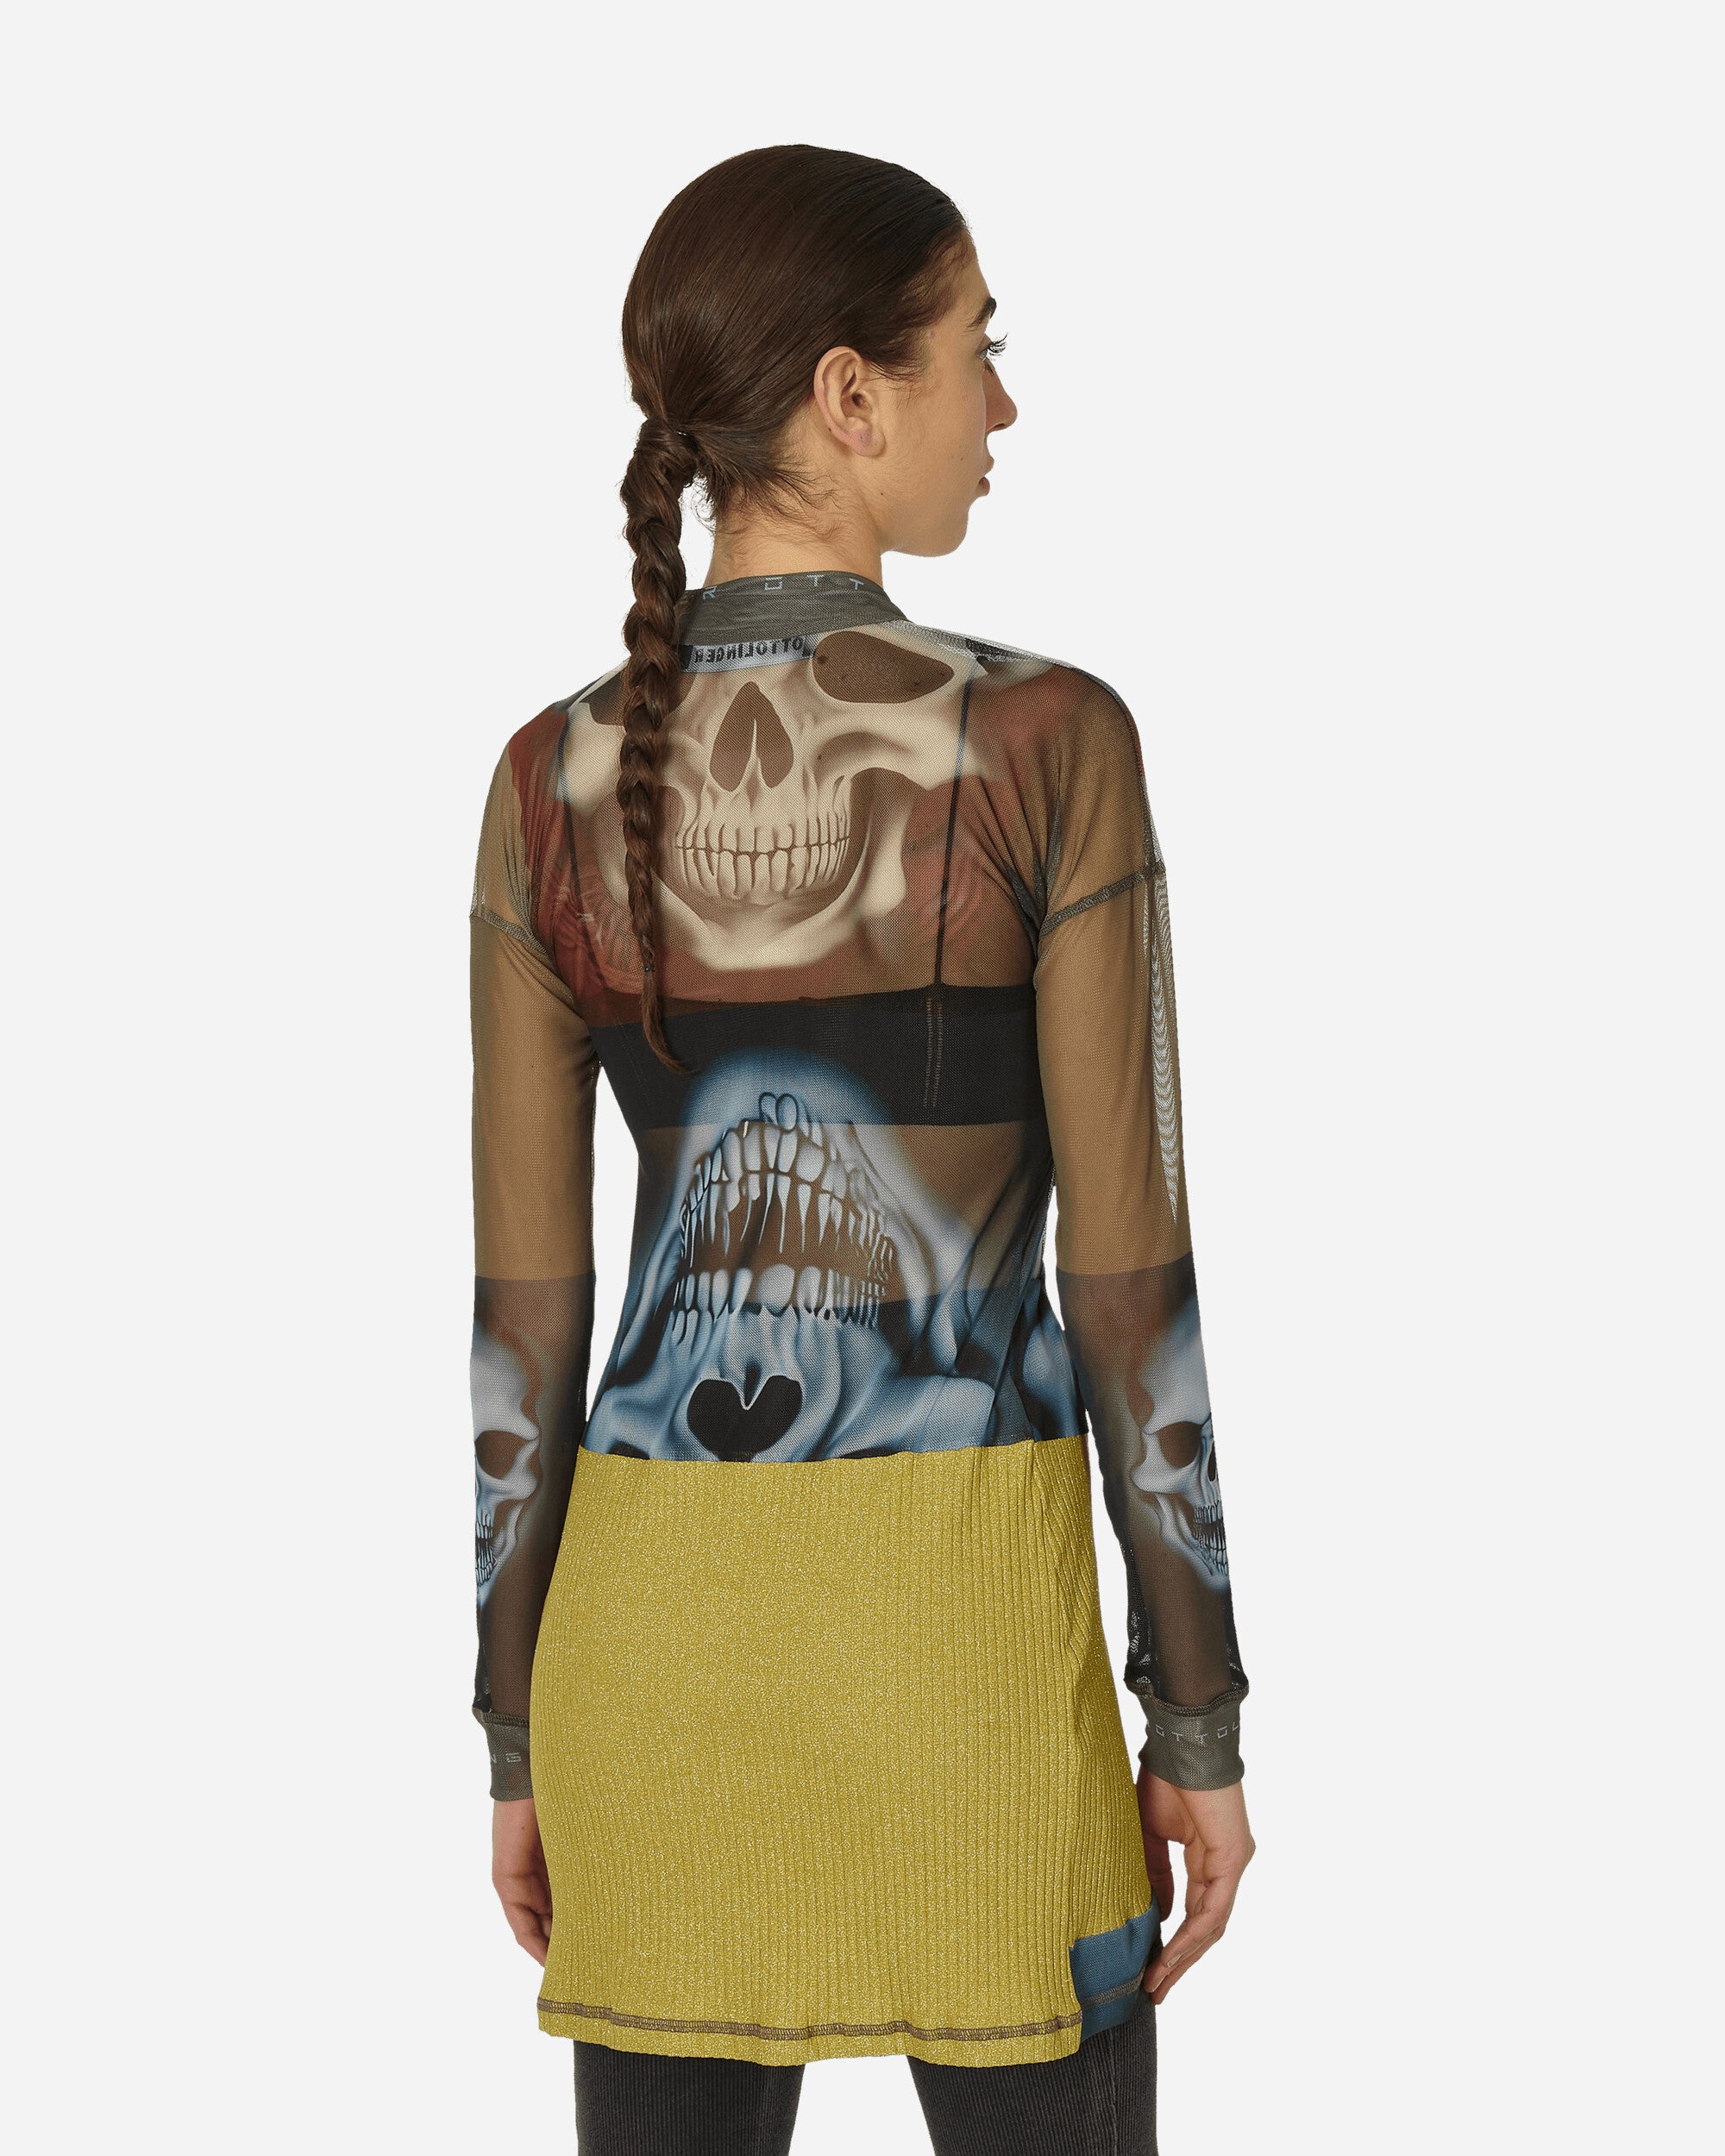 Ottolinger Wmns Mesh Shirt Dress Skull Print Dresses Dress Short 103101 SKPRNT